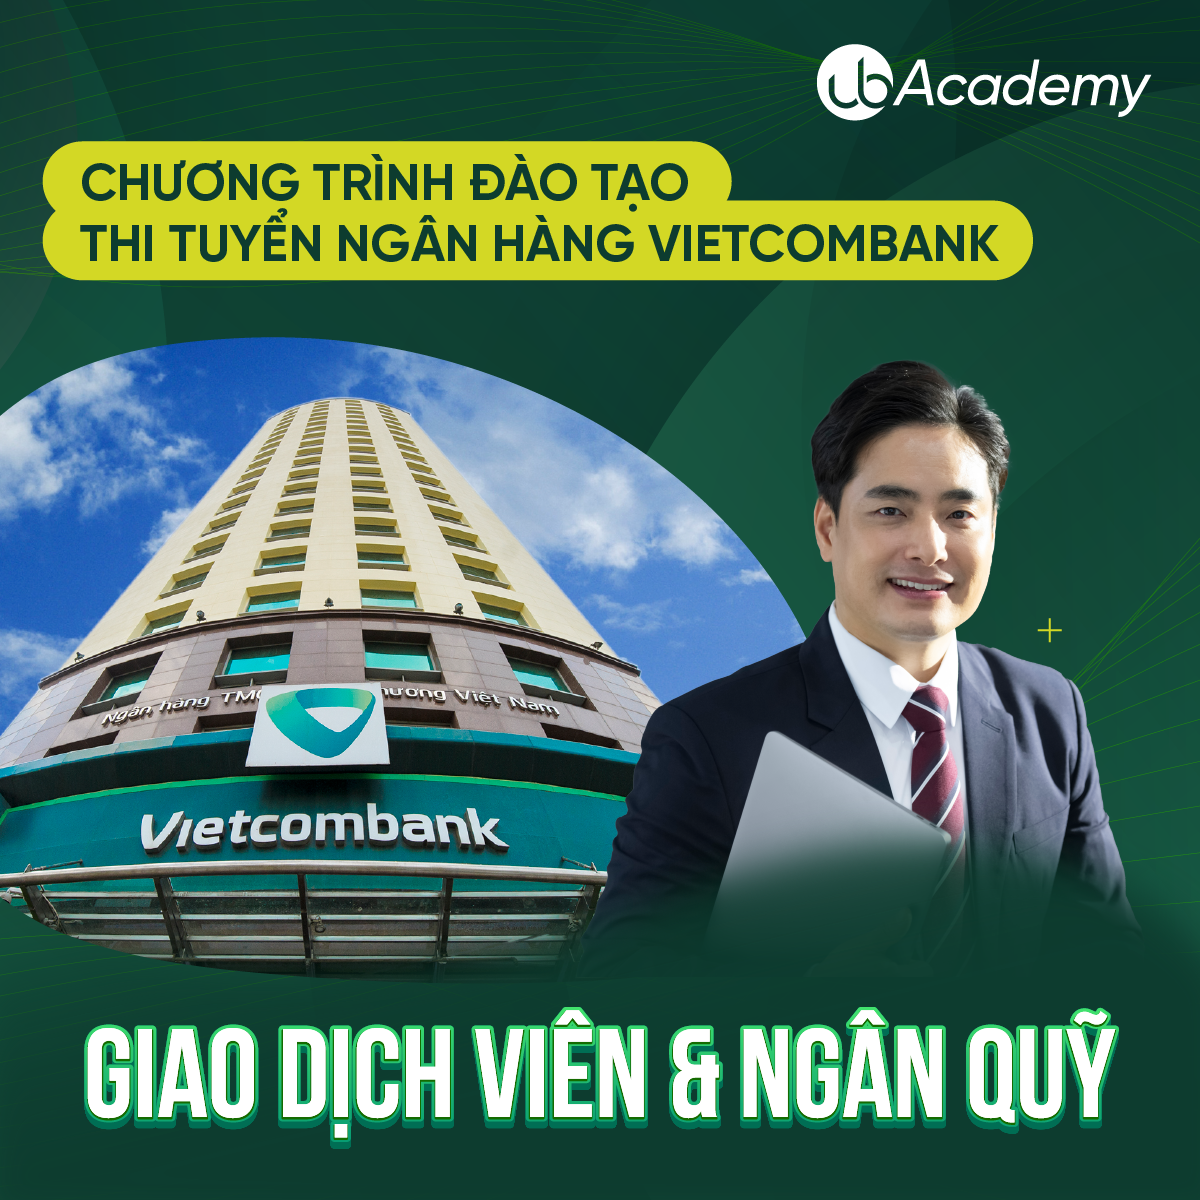 Chương trình đào tạo thi tuyển Ngân hàng Vietcombank - Vị trí Kế toán/Giao dịch viên